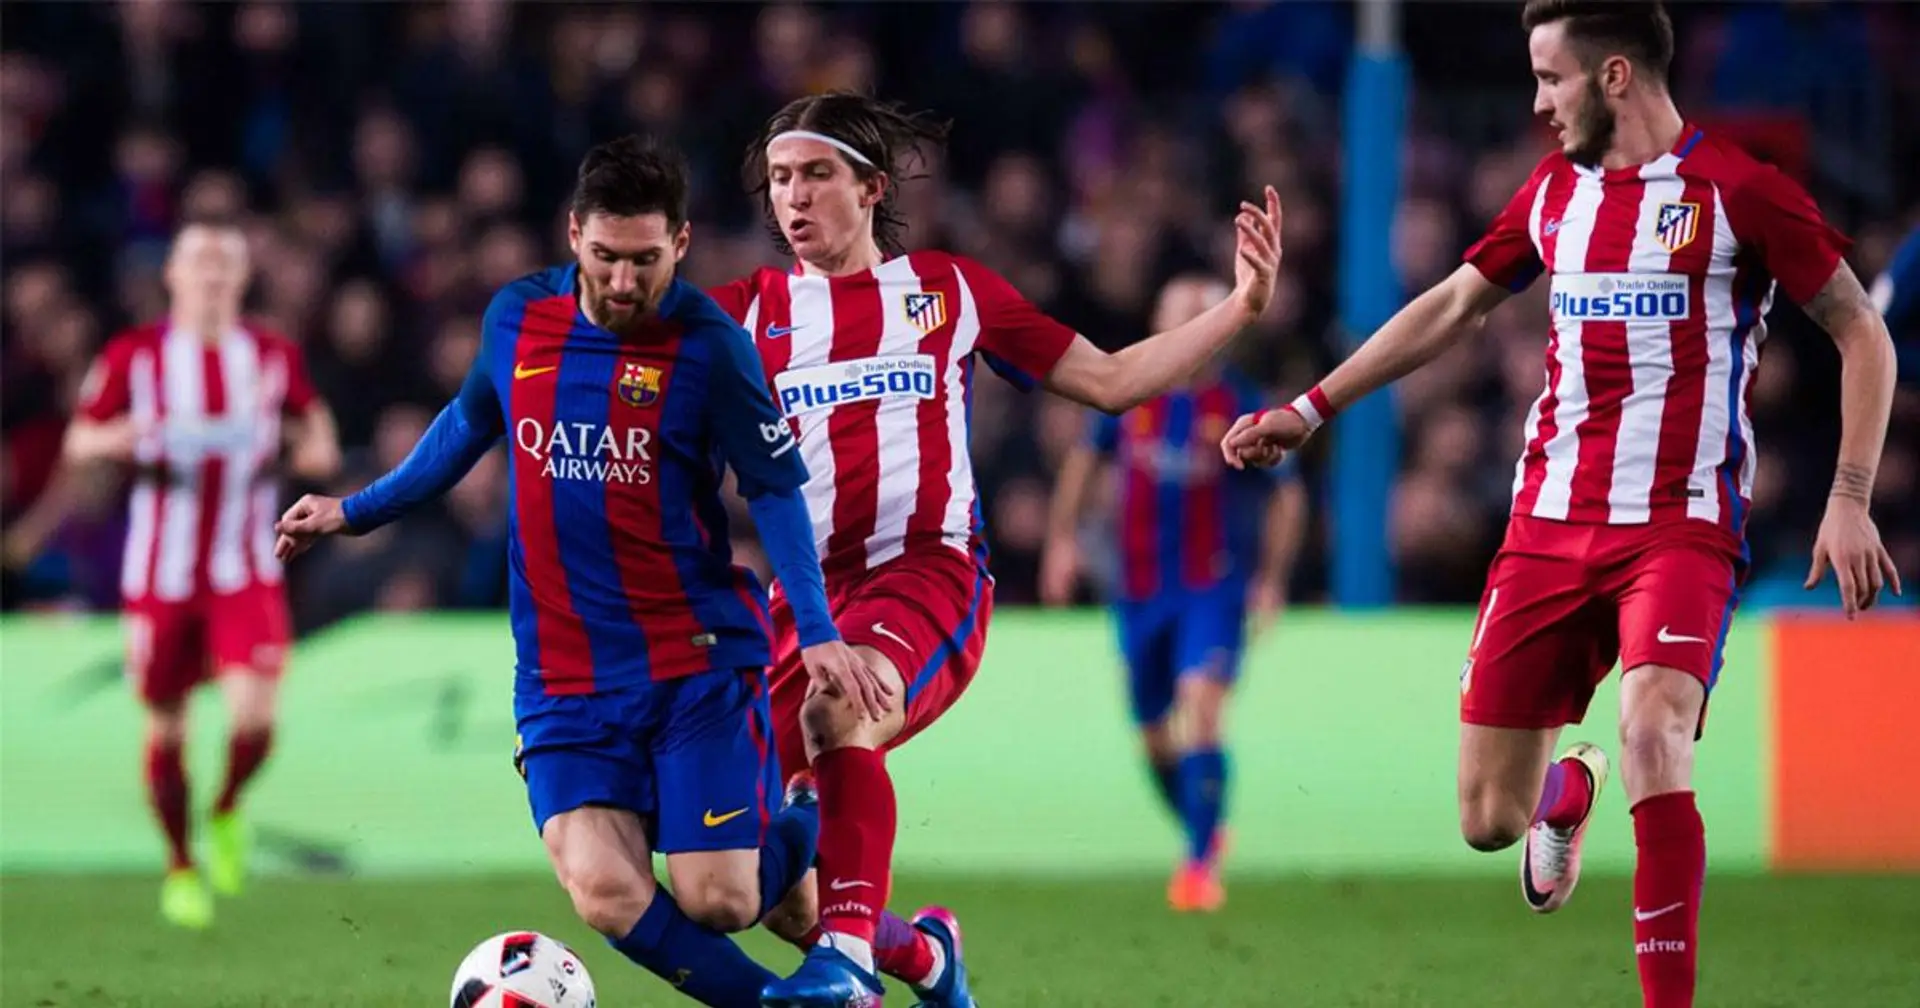 "Messi avait un truc, il improvisait beaucoup": Filipe Luis révèle comment il défendait contre Leo